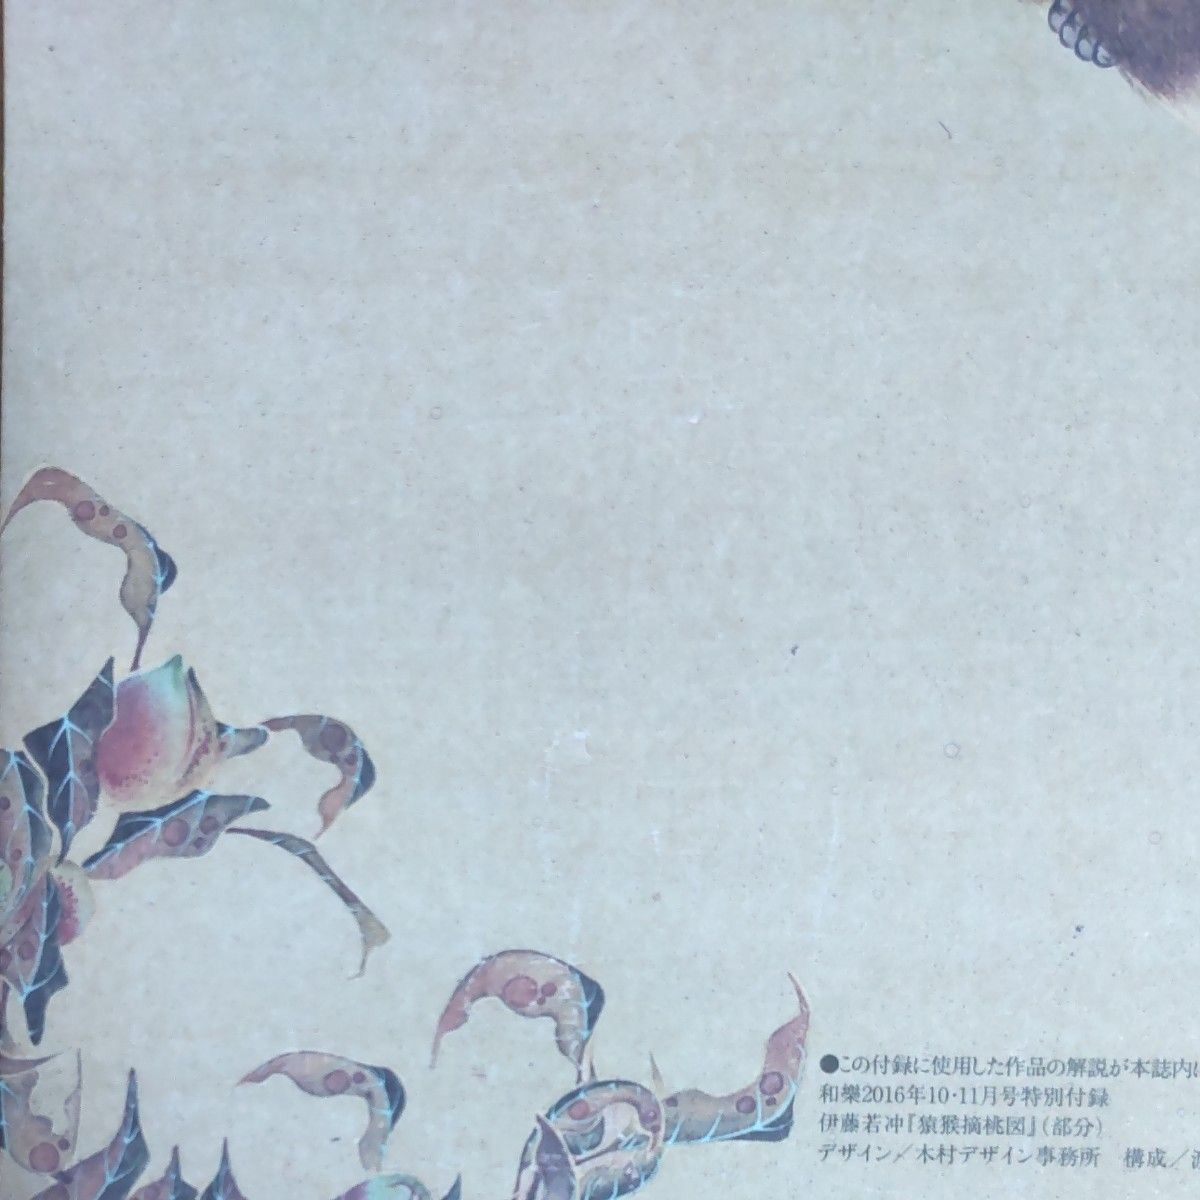 伊藤若冲『猿猴摘桃図』部分 便箋   図柄1種  縦書き  32枚入  『和樂』2016年10月11月号  特別付録   未使用品